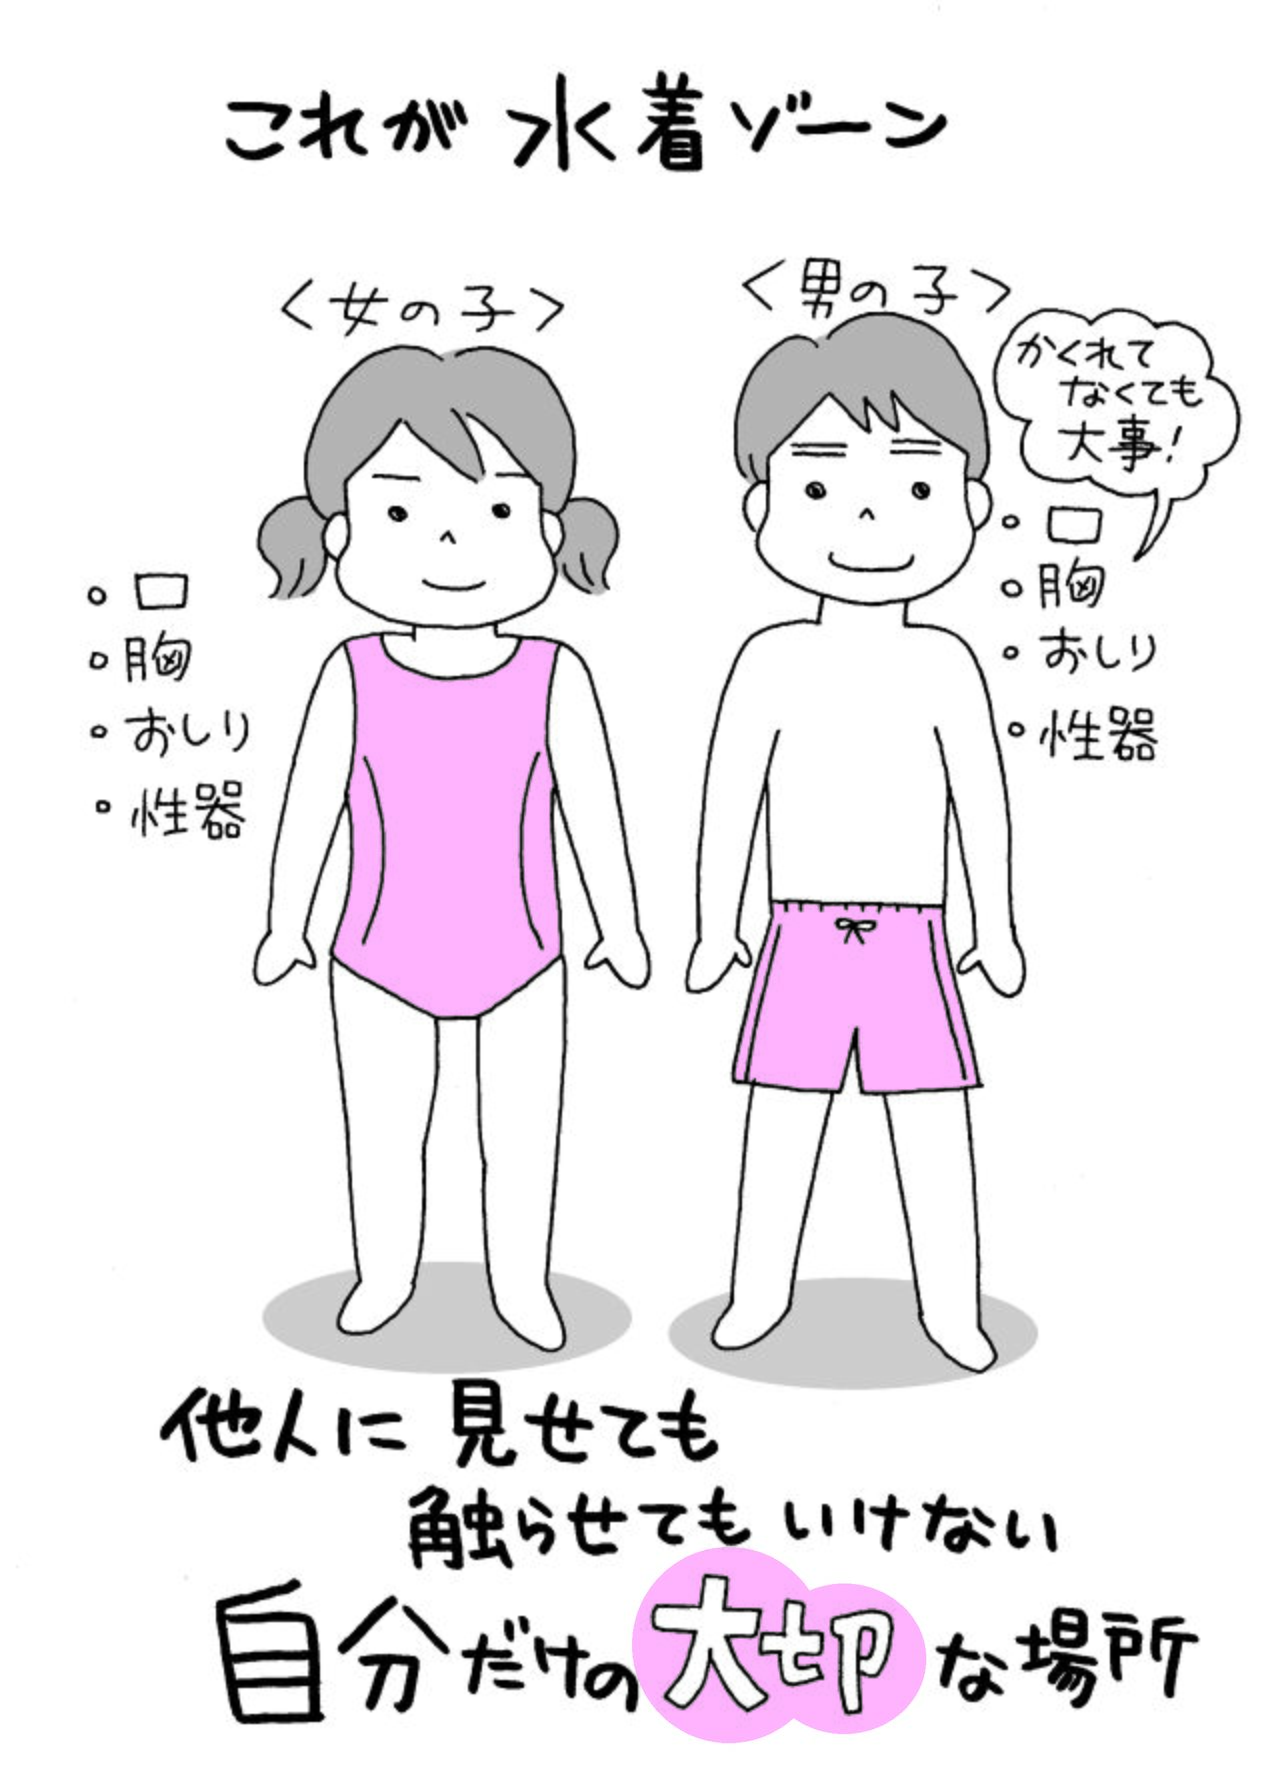 シリーズ ニッポンの性教育 1 子どもたちを性犯罪の被害者にも加害者にもしないために Nippon Com